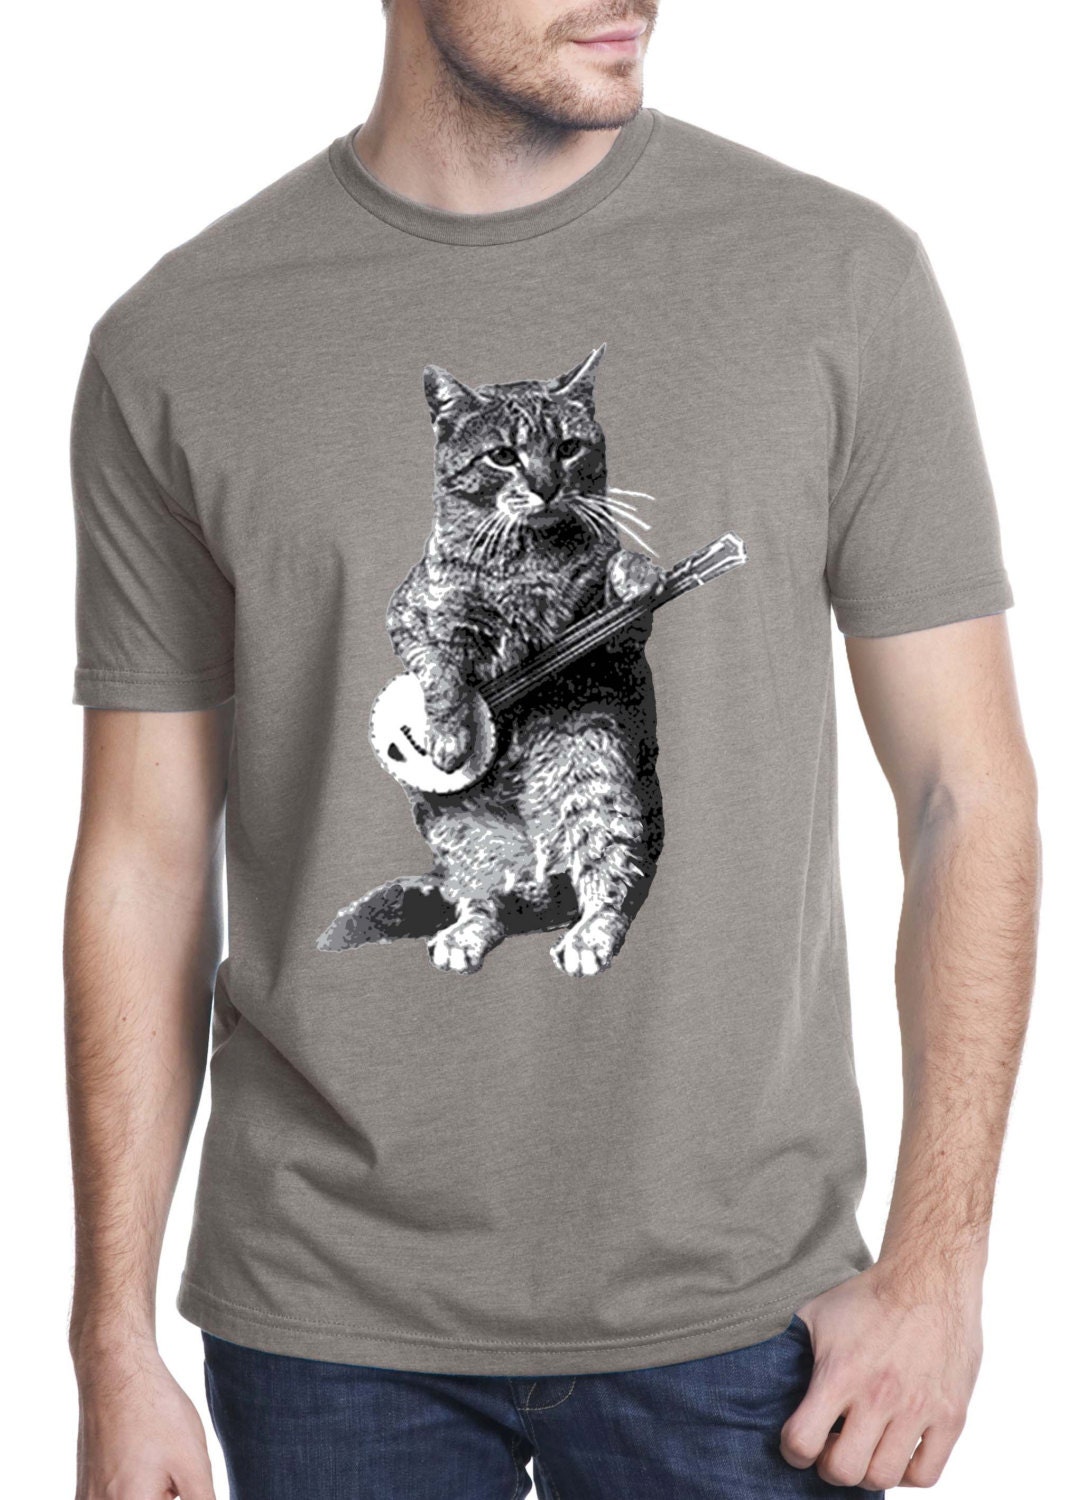 banjo tshirt cat tshirt mens tshirt cat by ToTheMoonAndBack